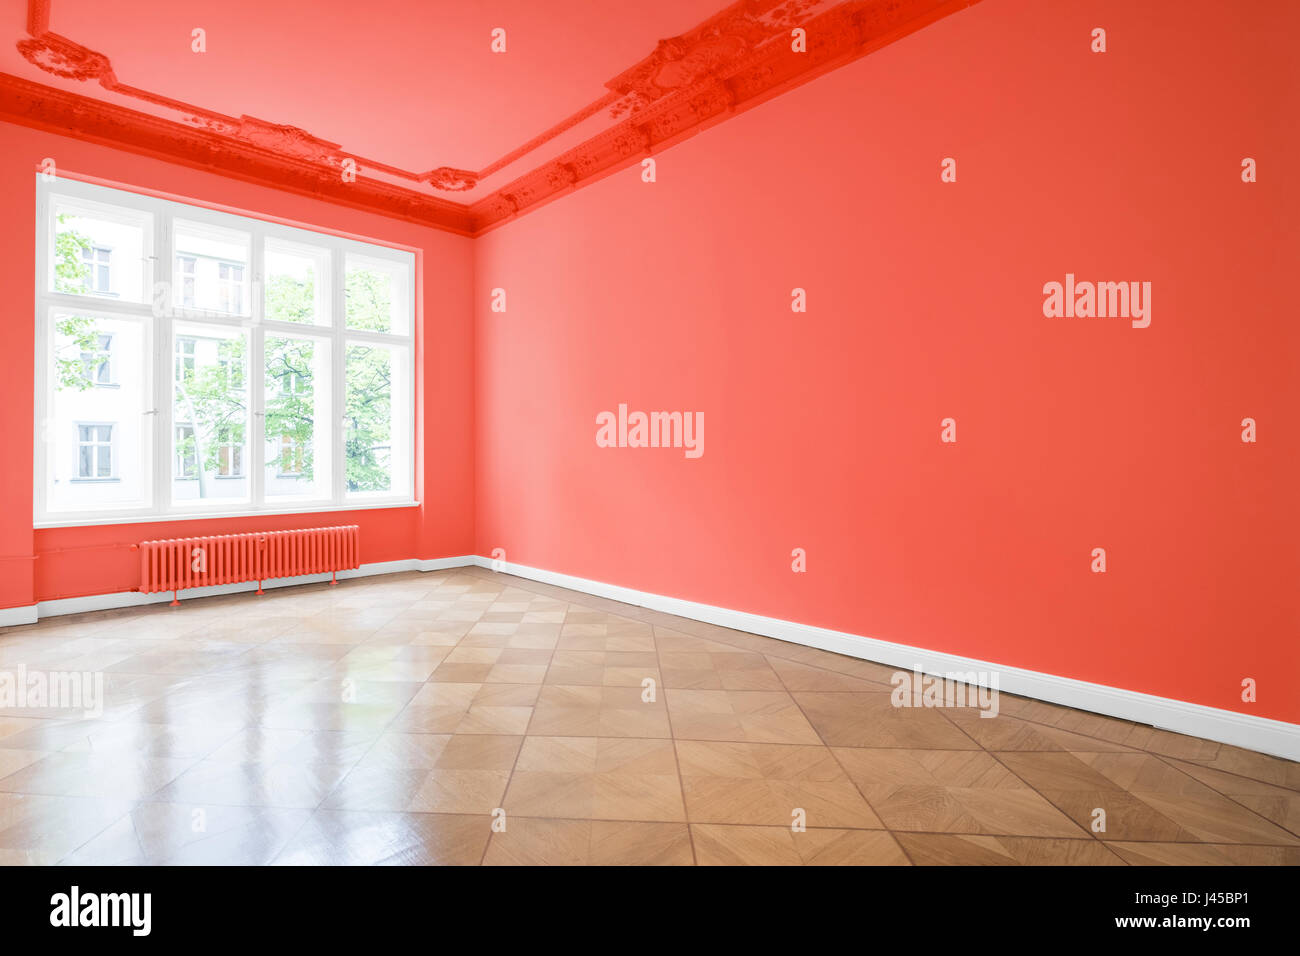 Salle vide dans nouvel appartement aux murs rouges et parquet Banque D'Images